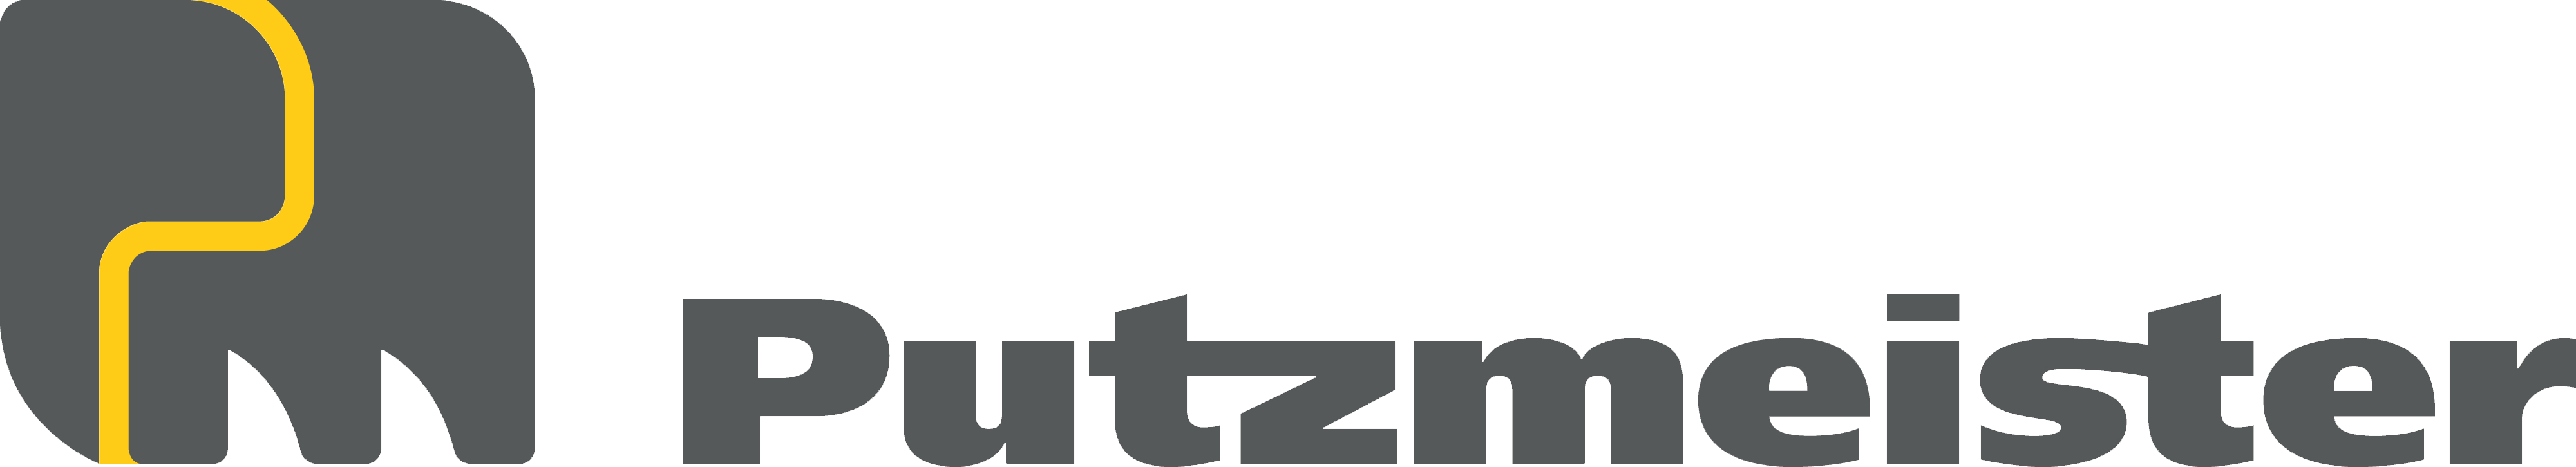 putzmeister-logo